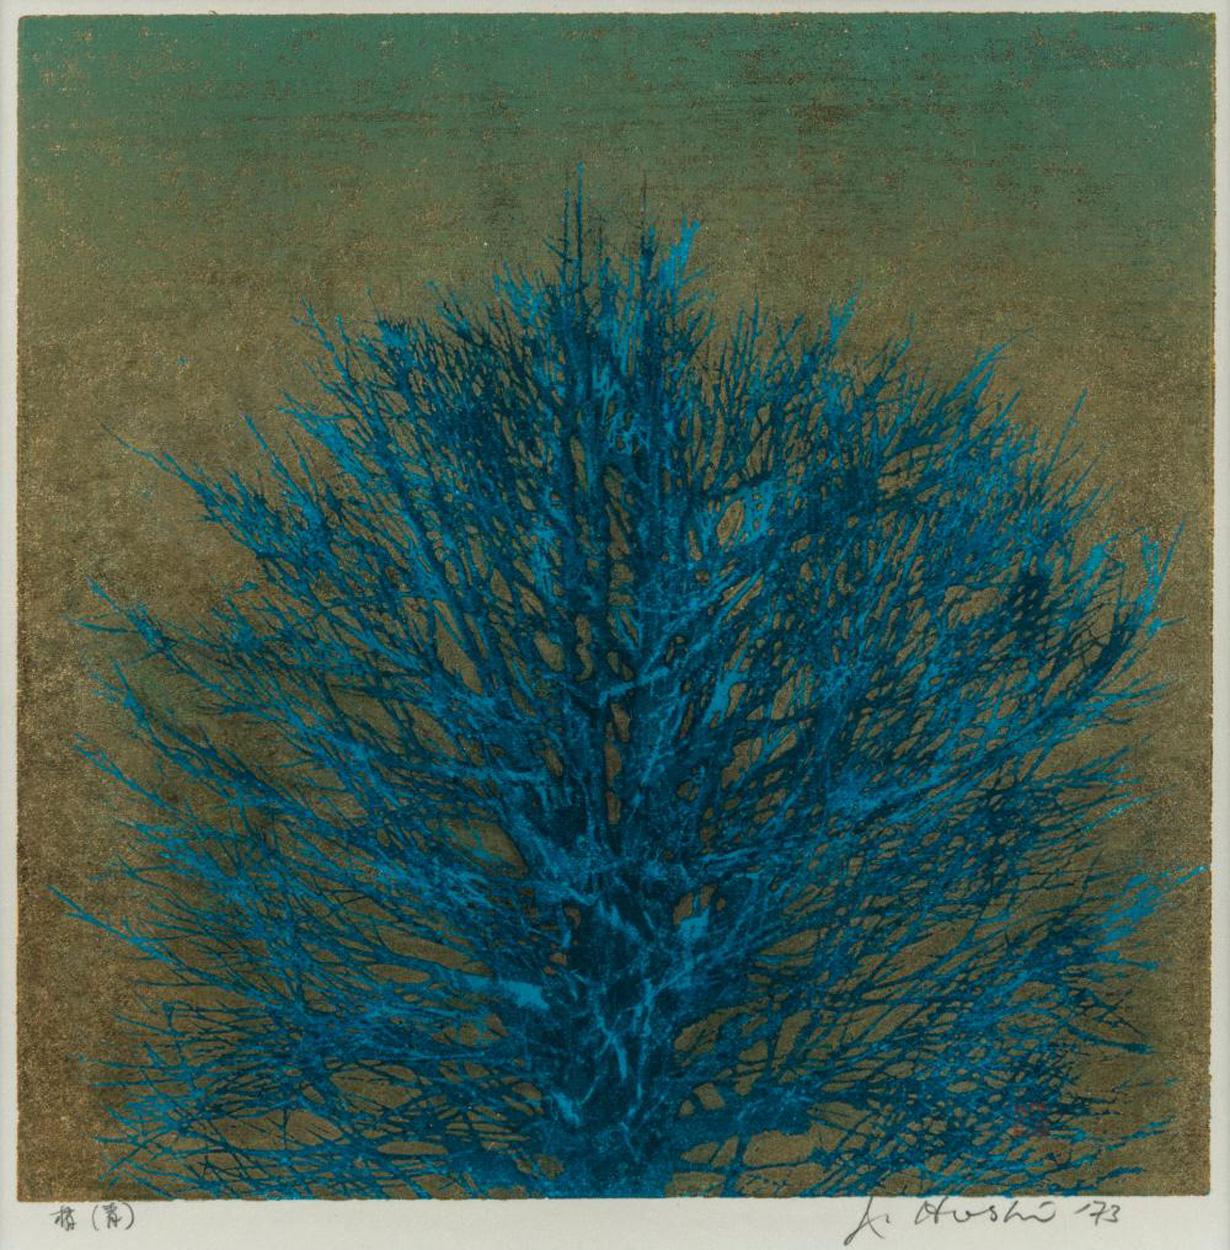  Joichi Hoshi Blue Tree Top Holzschnitt mit Goldpigment.  Dies ist ein schönes Beispiel für das Genre der Künstler.

Joichi Hoshi wurde 1913 in Niigata, Japan, geboren. Er arbeitete 13 Jahre lang als Lehrer in Taiwan. Am Ende des Zweiten Weltkriegs